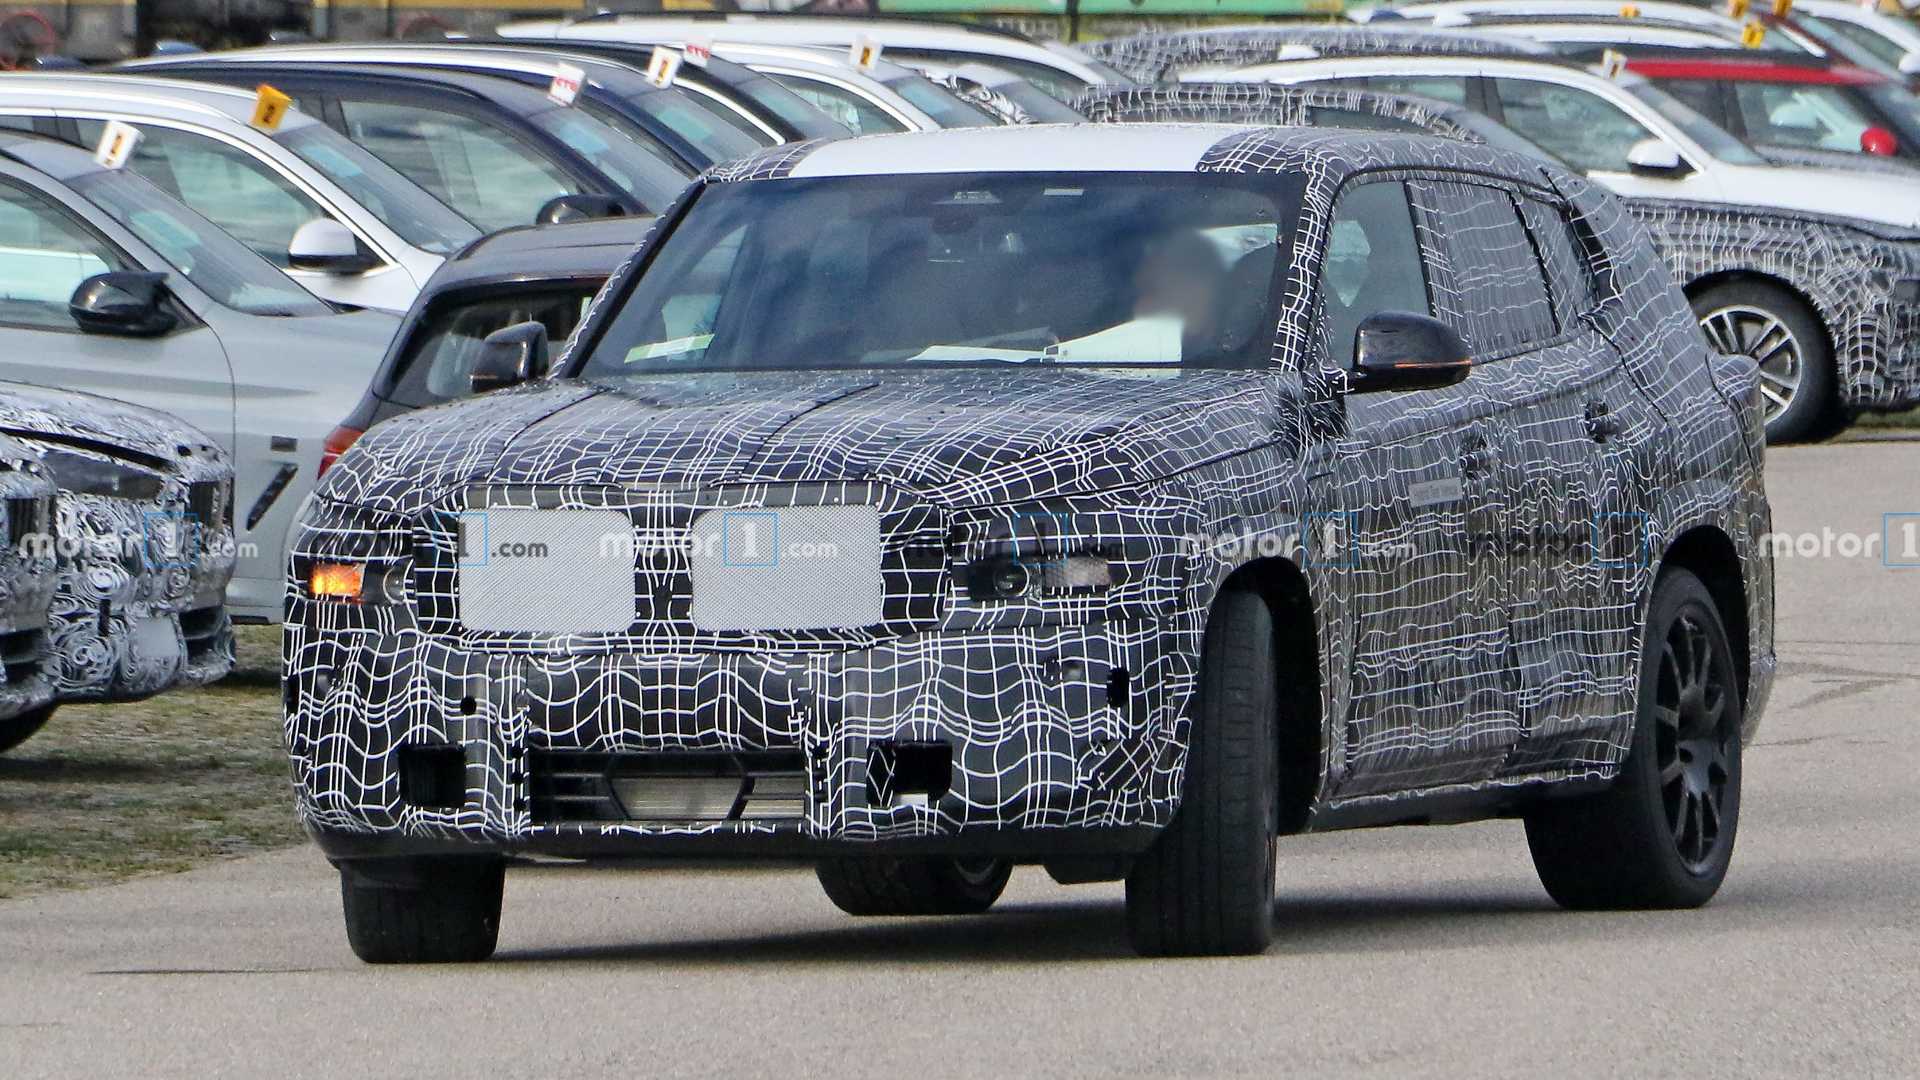 BMW X8 bắt đầu được thử nghiệm thực tế bmw-x8-spy-shots-front-three-quarters-parking-lot.jpg